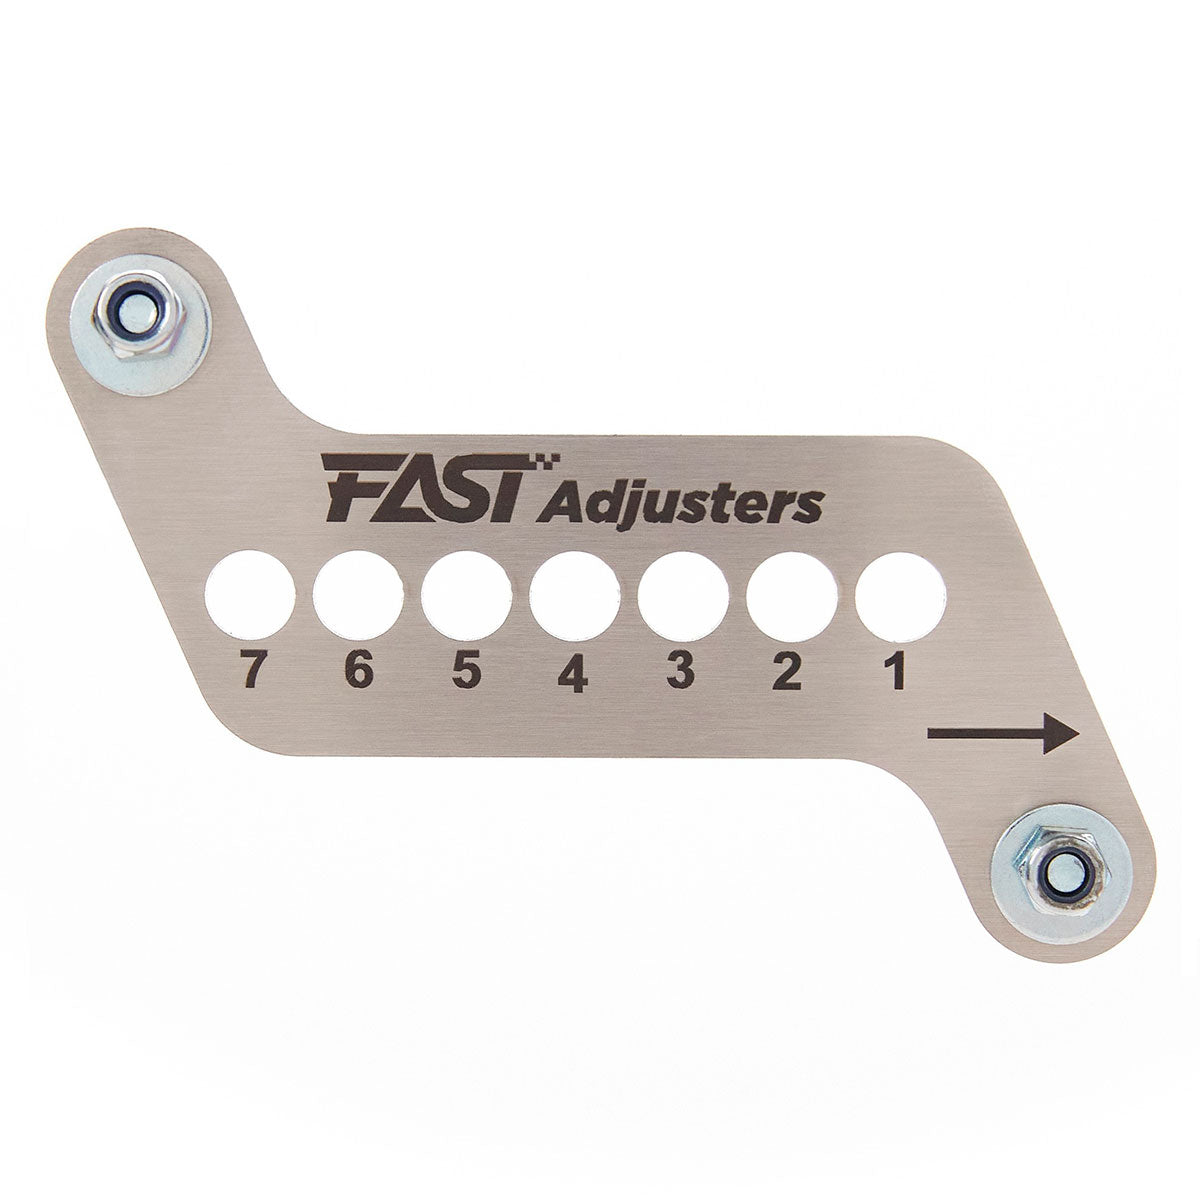 Fast Adjusters V3.1